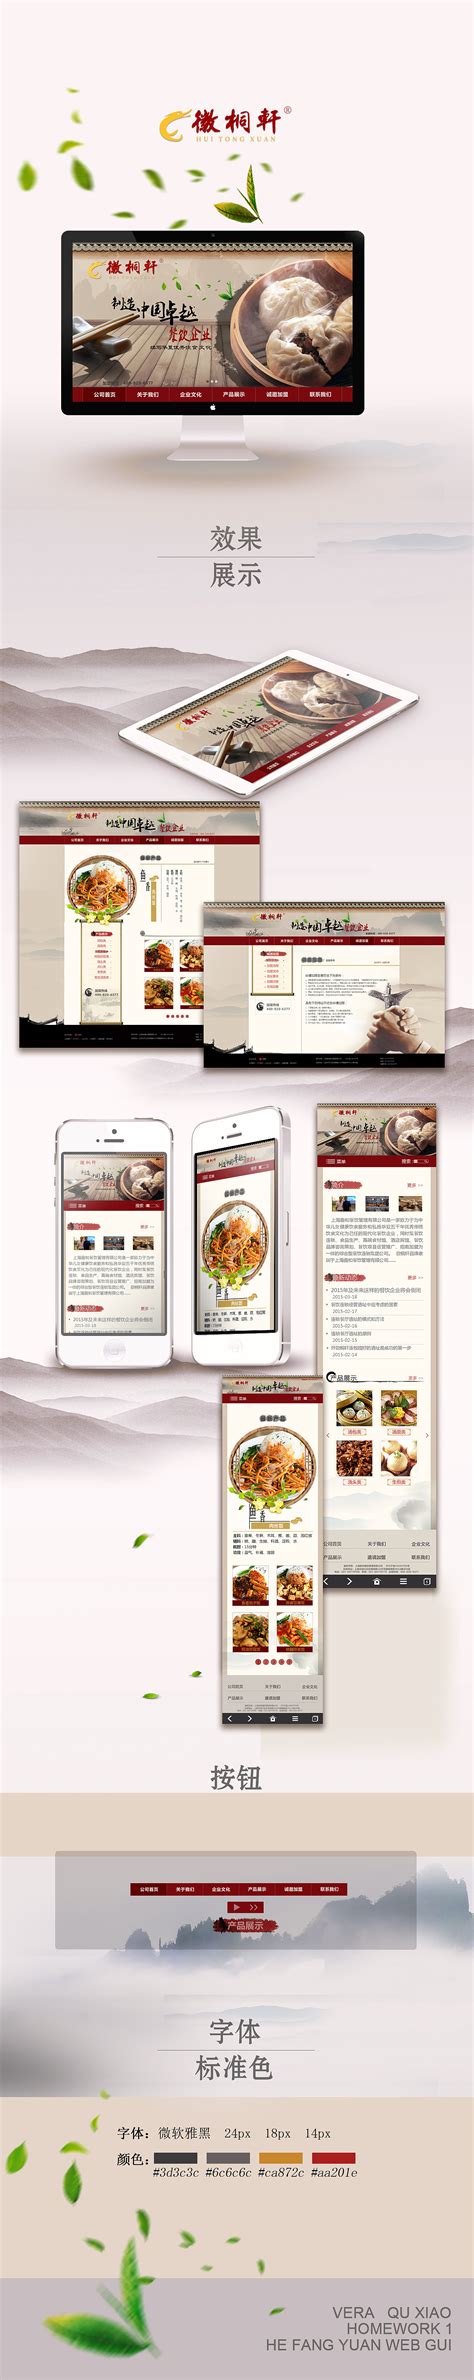 美味佳肴餐厅网页模板免费下载html - 模板王